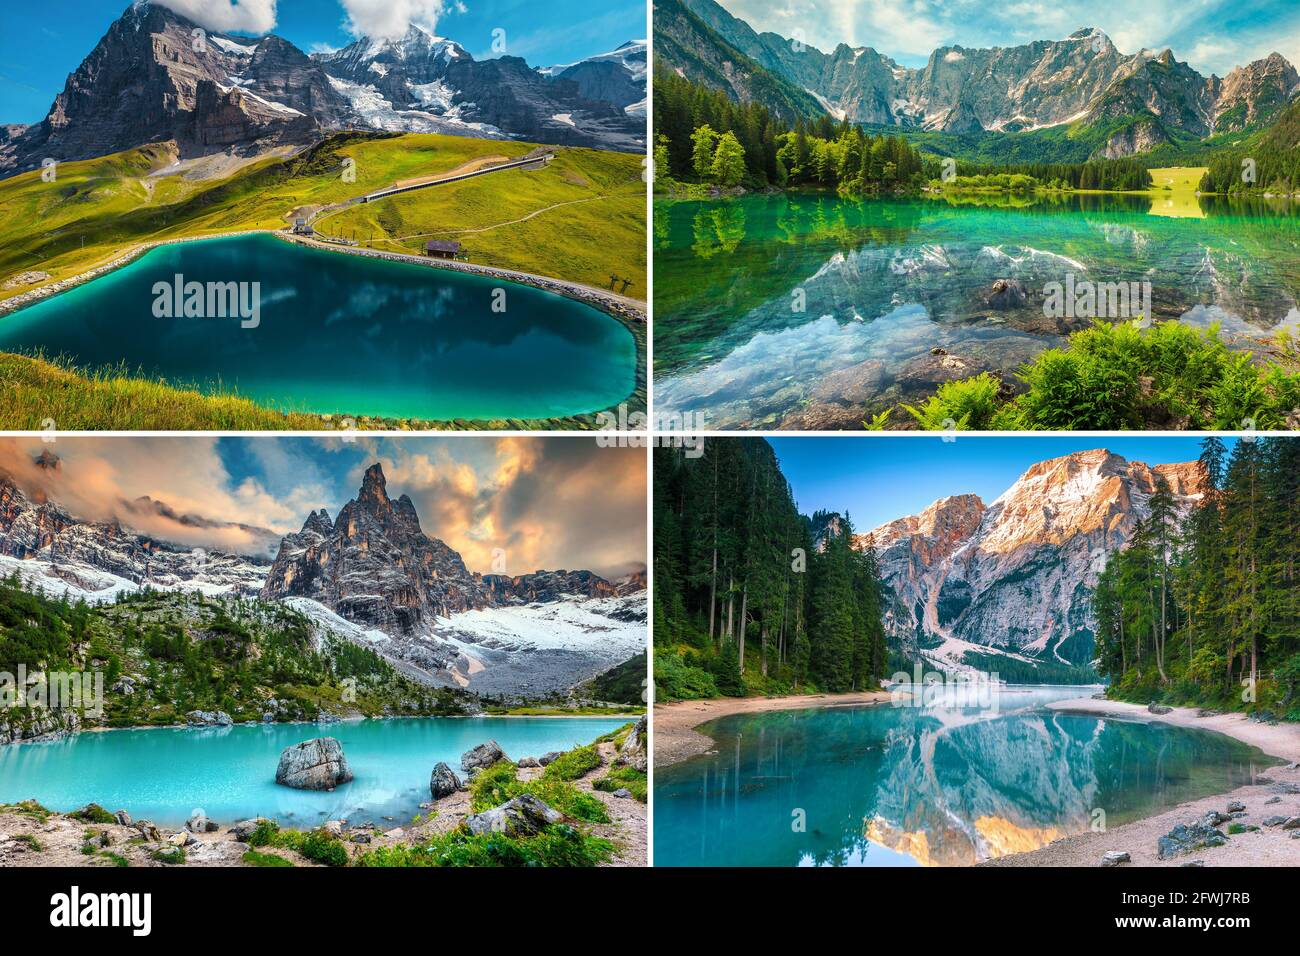 Collage von berühmten und schönen Bergseen in den Alpen. Fallbodensee, Schweiz, Fusine See, Sorapis See und Prags See, Italien Stockfoto